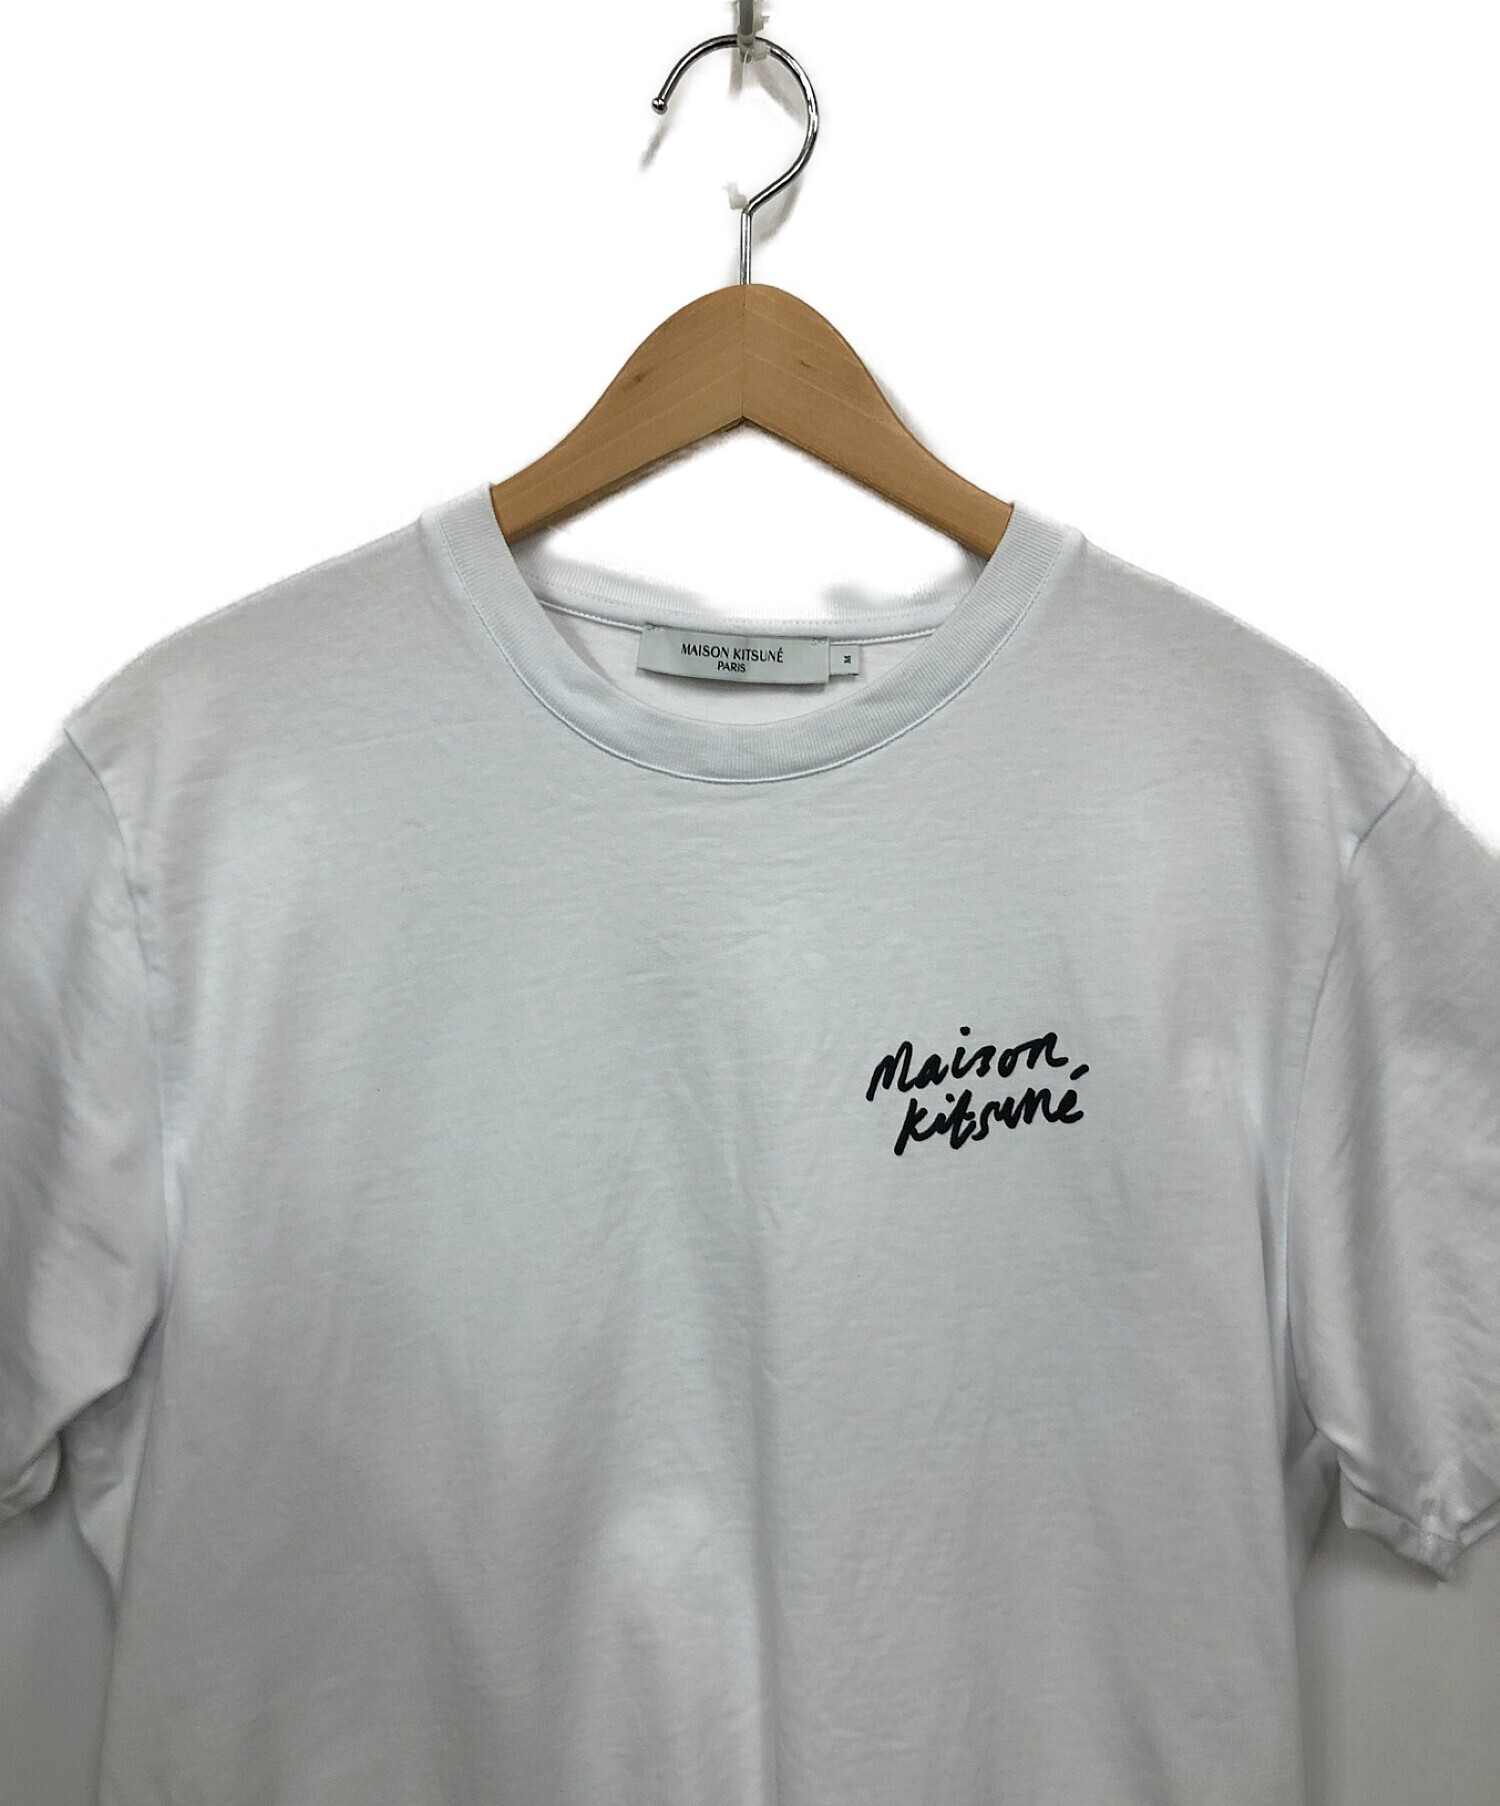 優れた品質 【レア】23SS tシャツ&バッグ Maison Kitsune メゾンキツネ